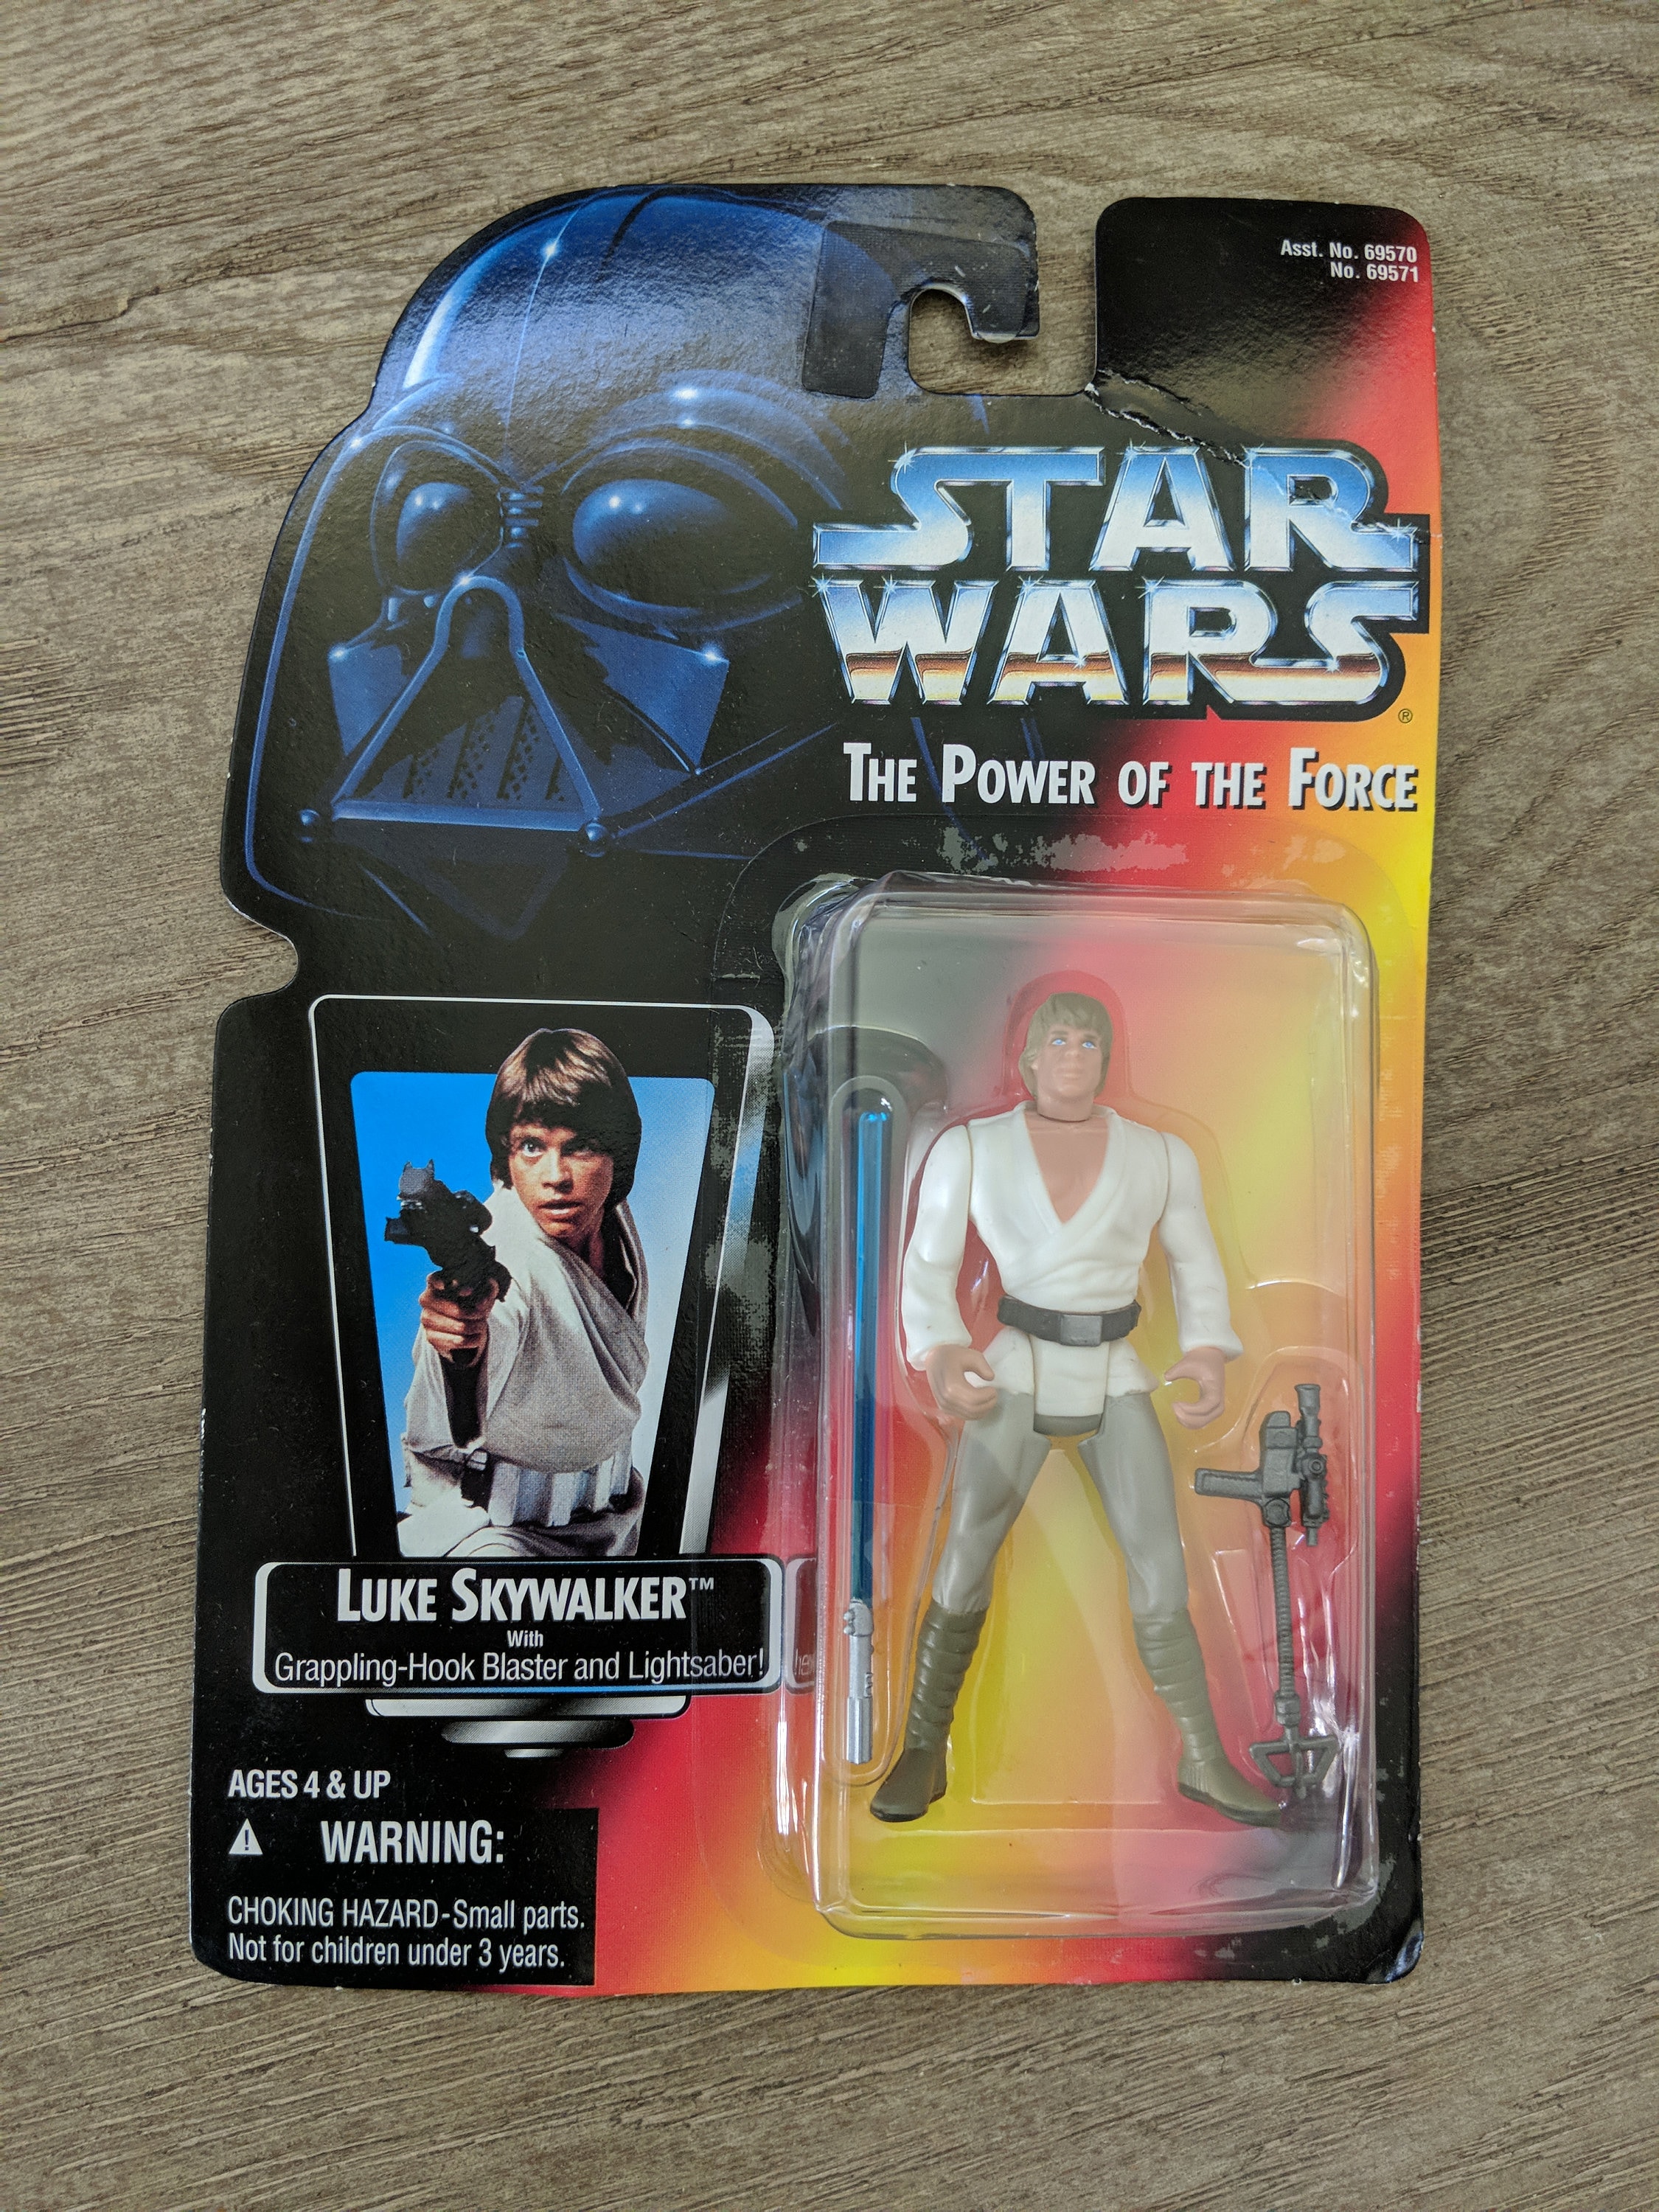 Luke With Grappling Hook Blaster and Lightsaber, Vintage Star Wars